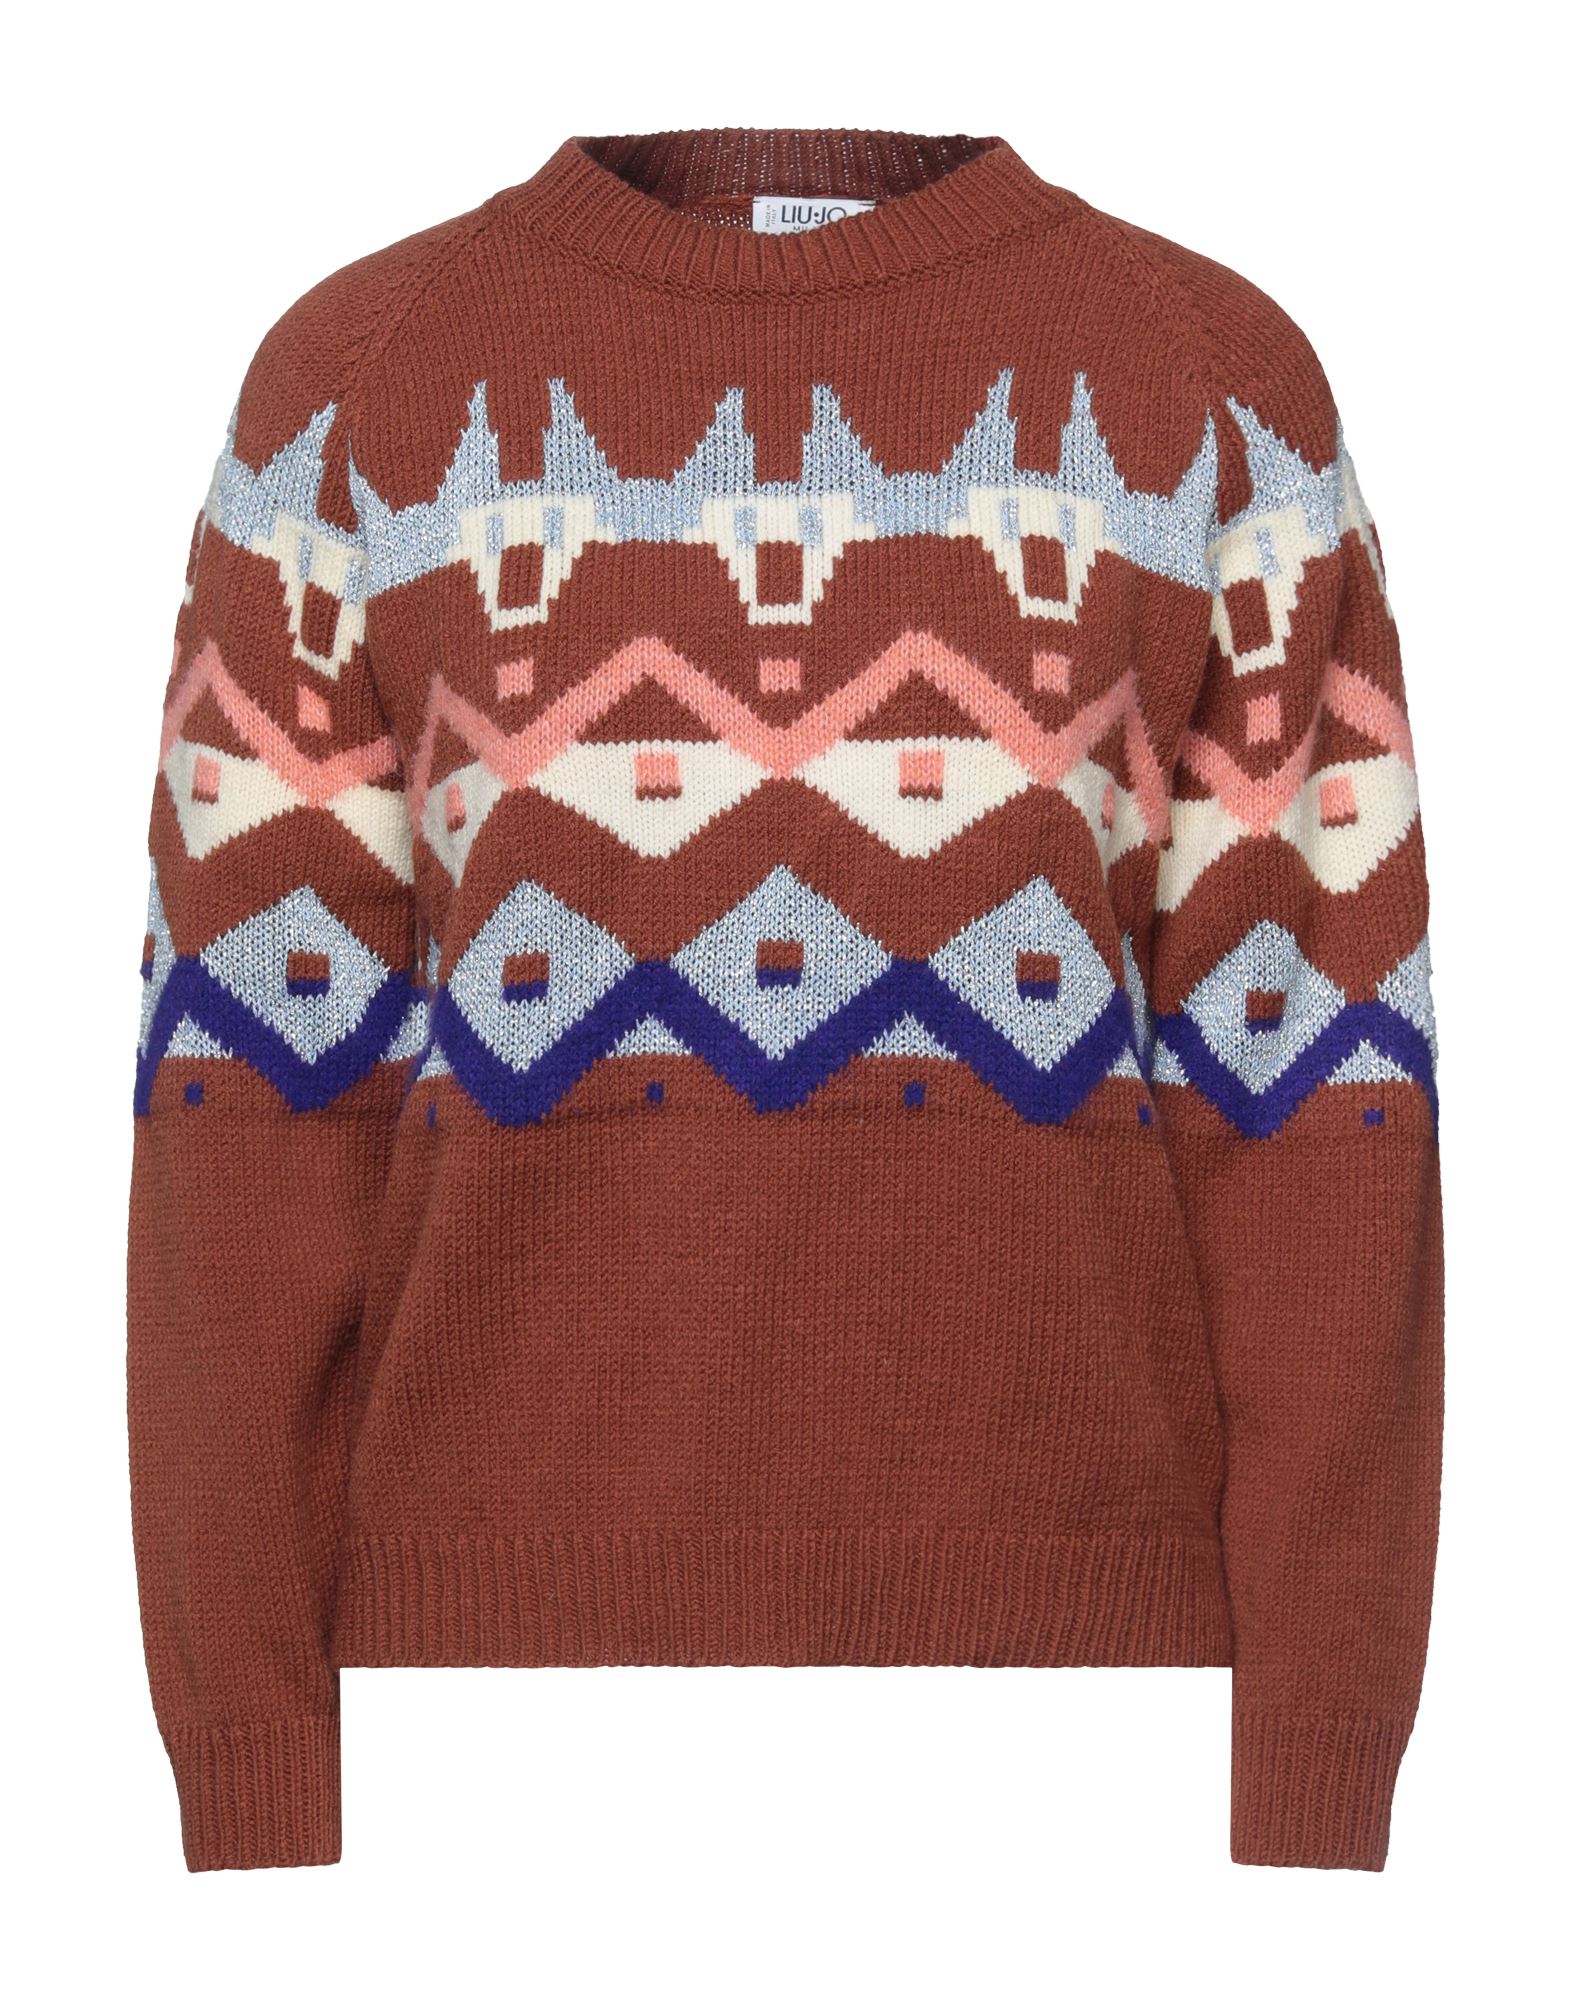 Liu •jo Sweaters In Brown